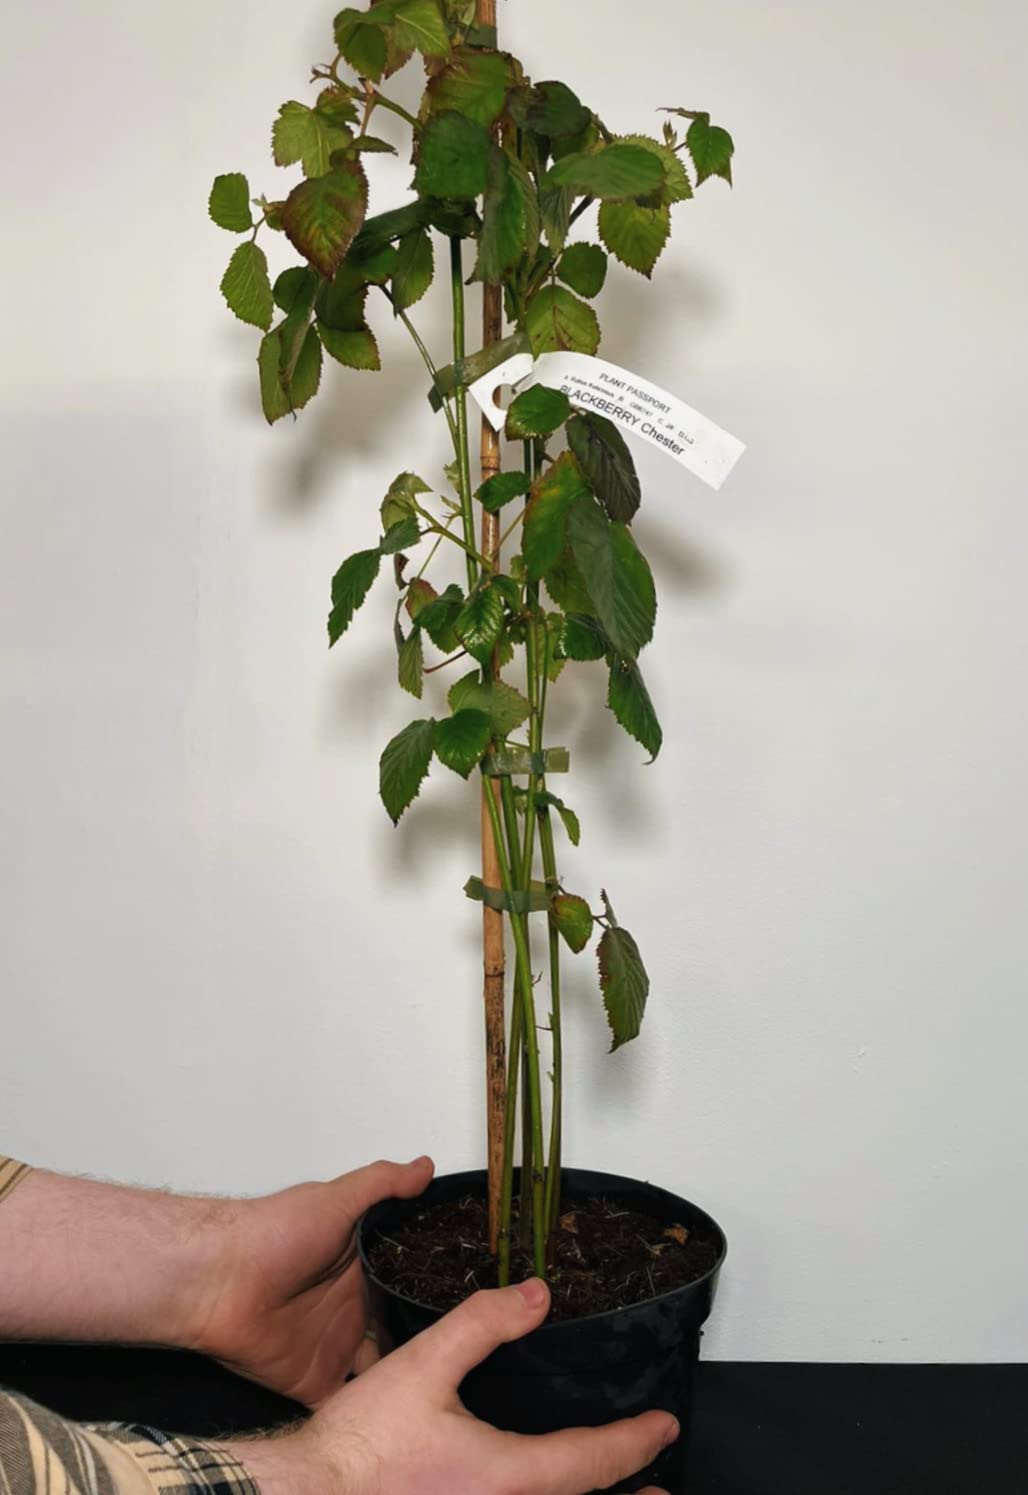 Fruit Plants - Blackberry - 3 x Full Plants in 2 Litre Pots